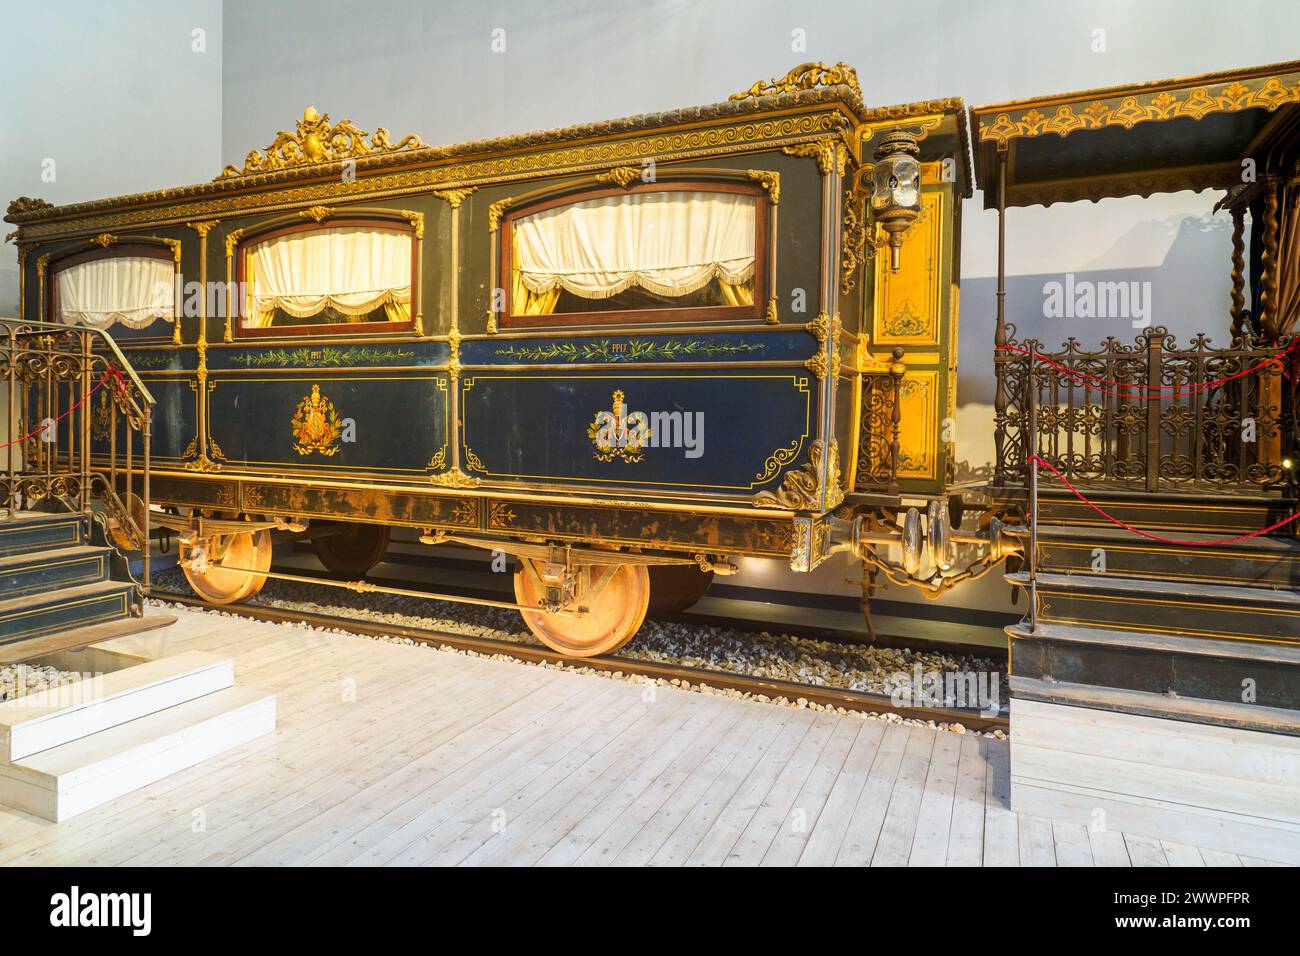 Wagen des päpstlichen Zuges Pius IX. Erbaut 1858 - Museo Centrale Montemartini, Rom, Italien Stockfoto